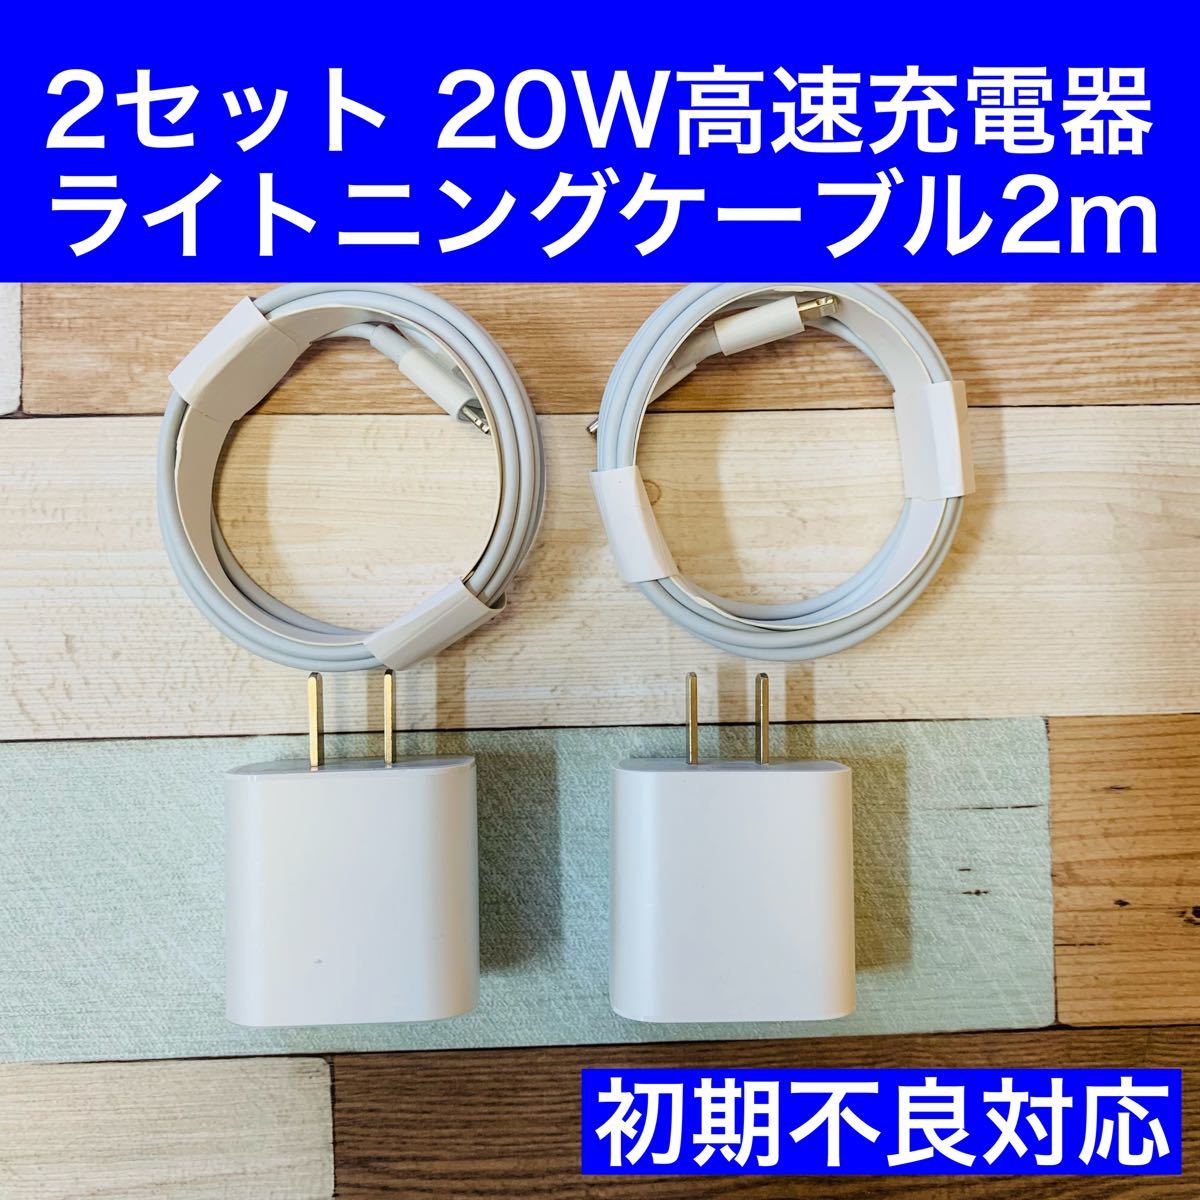 ◆2セット特別価格◆20W高速充電アダプタ&USB-C Lightningケーブル（2m）×2セット